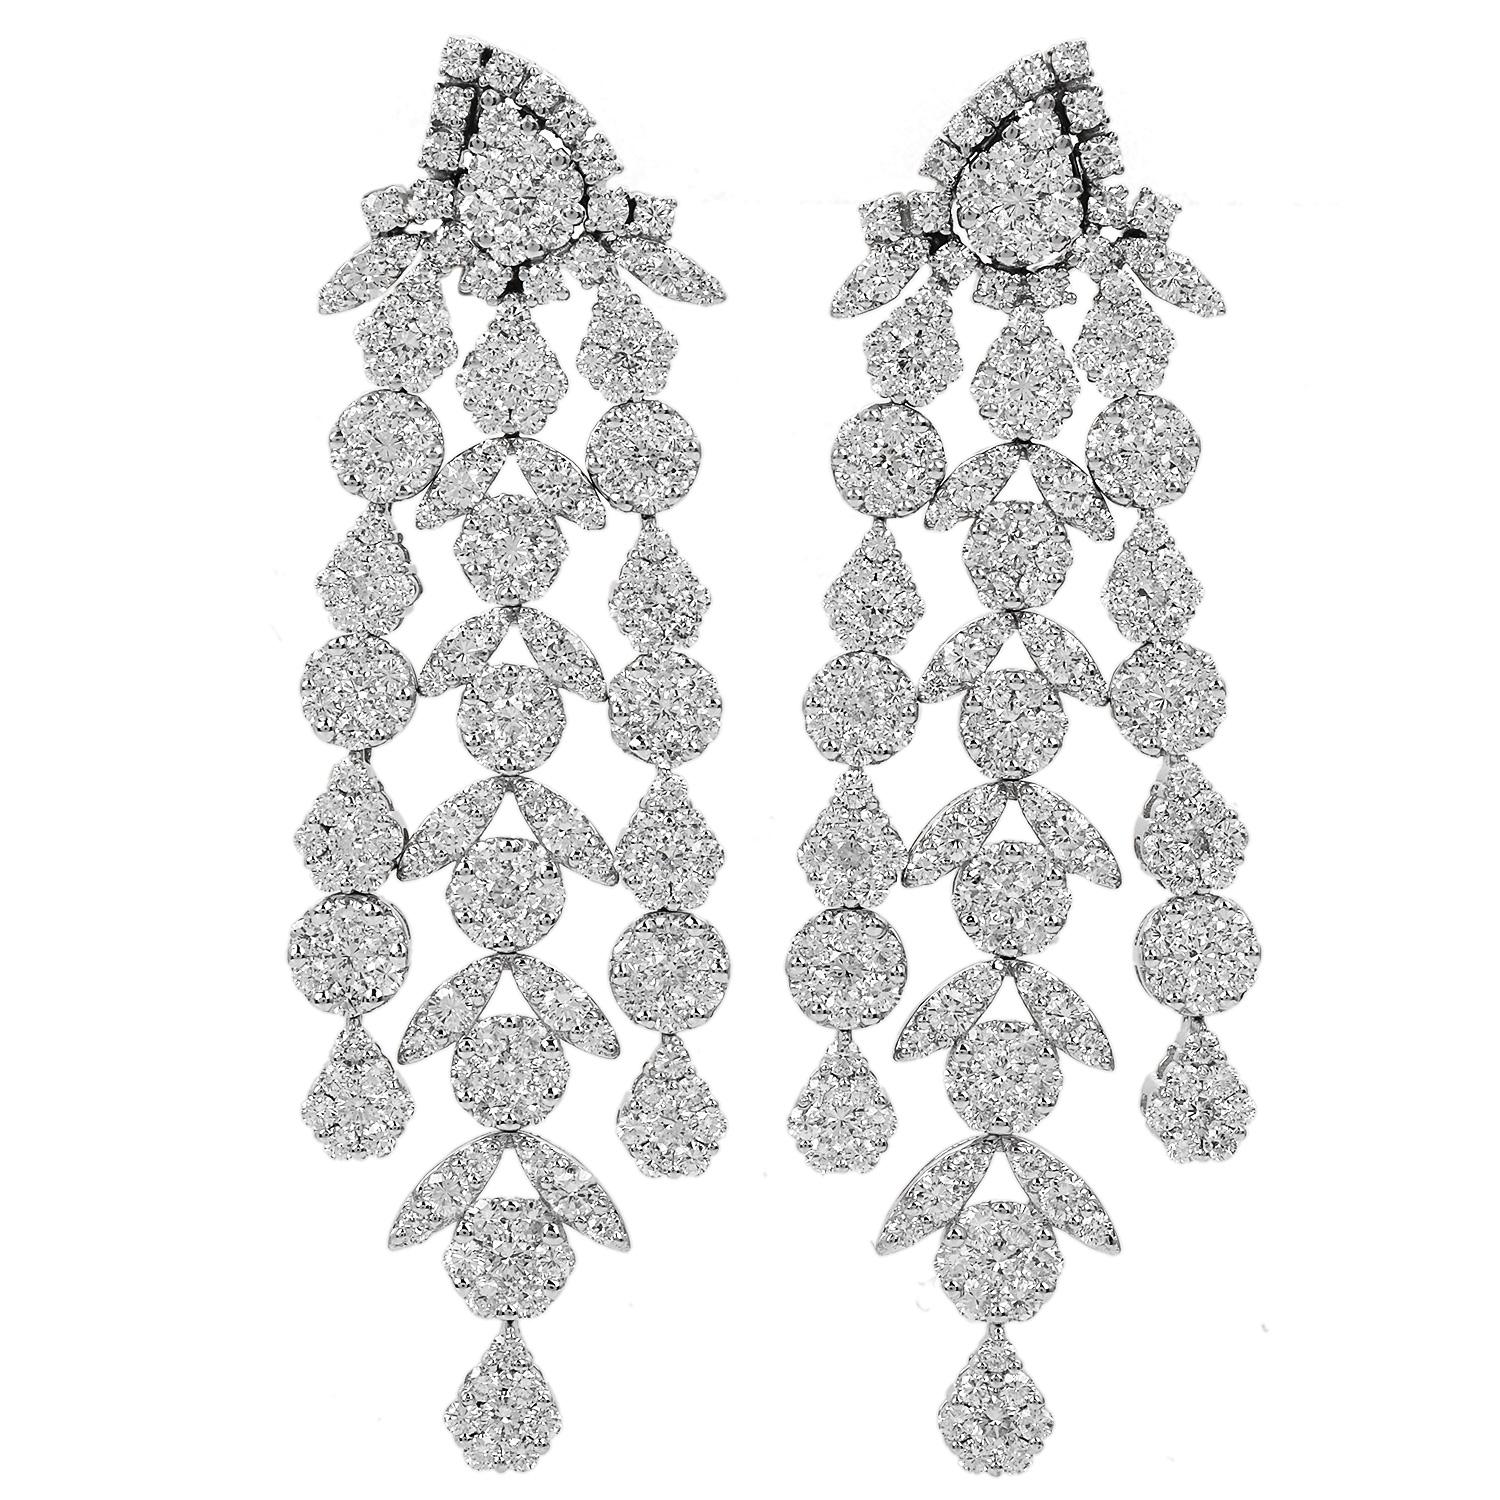 Die Floral Link Dangle Drop Earrings sind ein bemerkenswertes Paar Ohrringe, das den Inbegriff von Luxus darstellt.

Sie zeichnen sich durch eine schillernde Reihe von Diamanten aus, die in 18 Karat Weißgold gefasst sind und einen fesselnden,